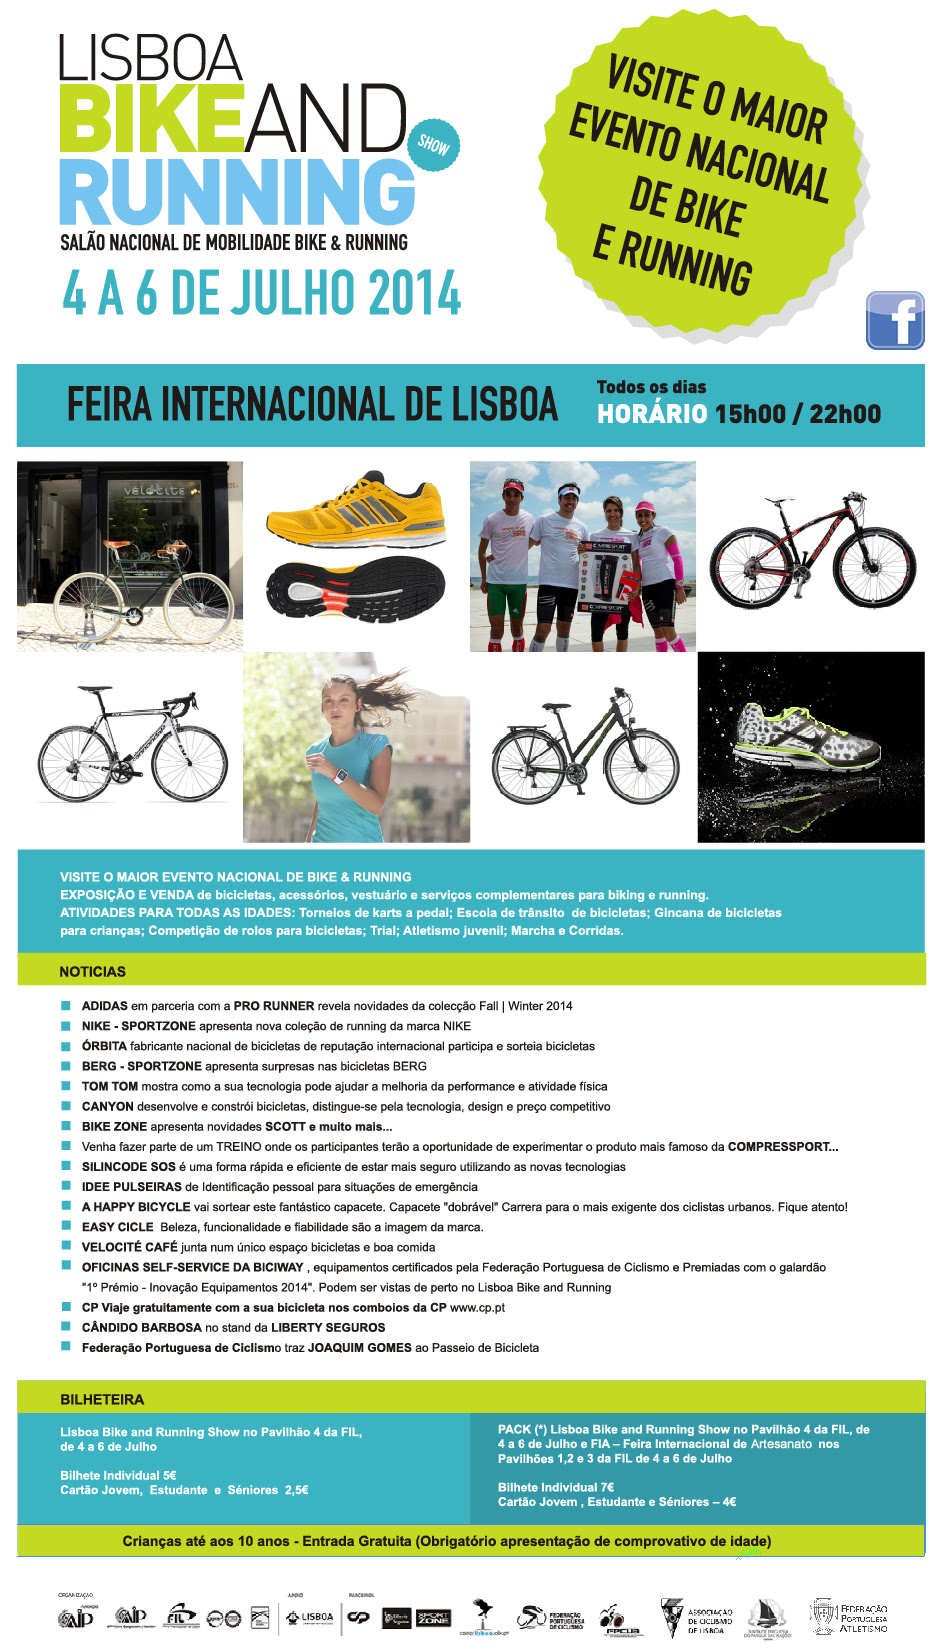 Lisboa Bike and Running